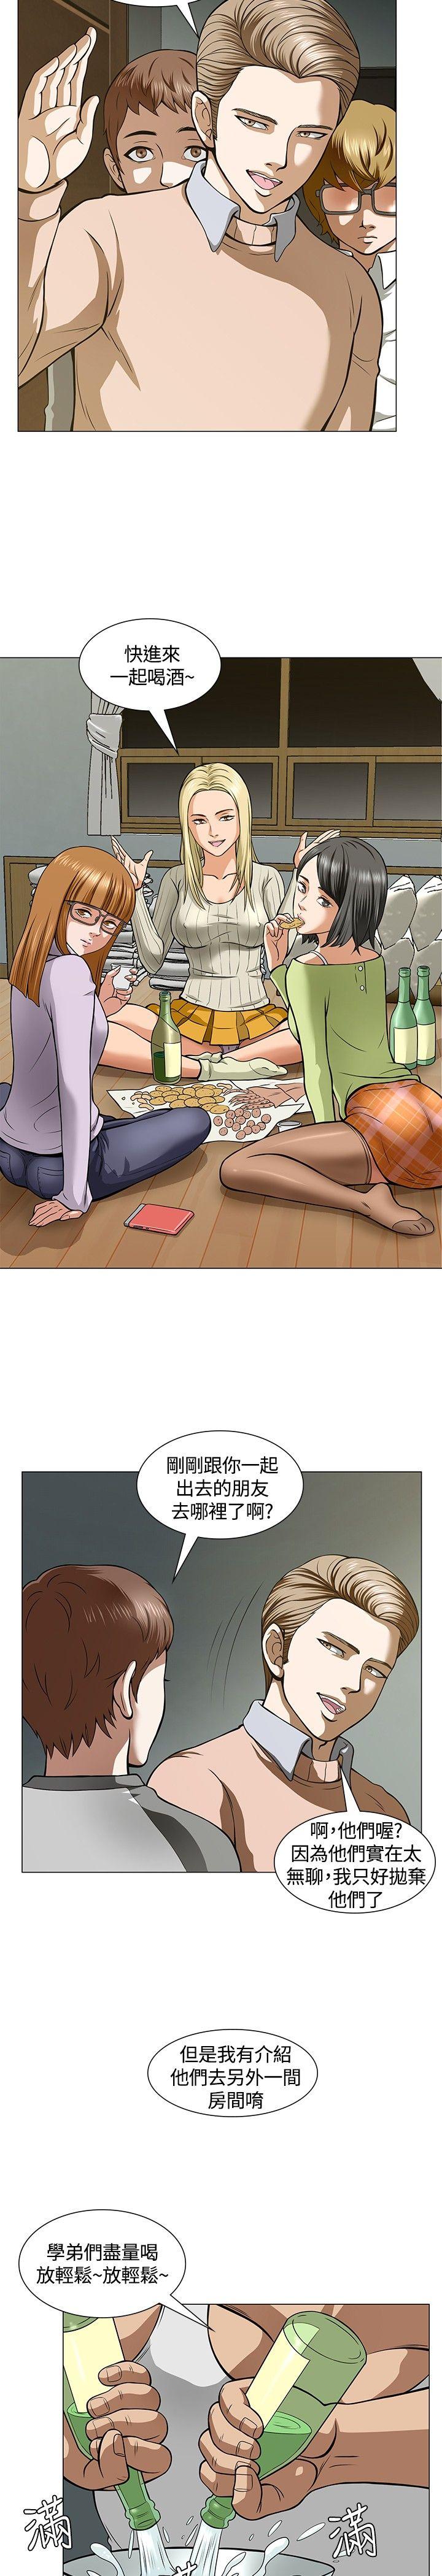 韩国污漫画 Roommate 第4话 19